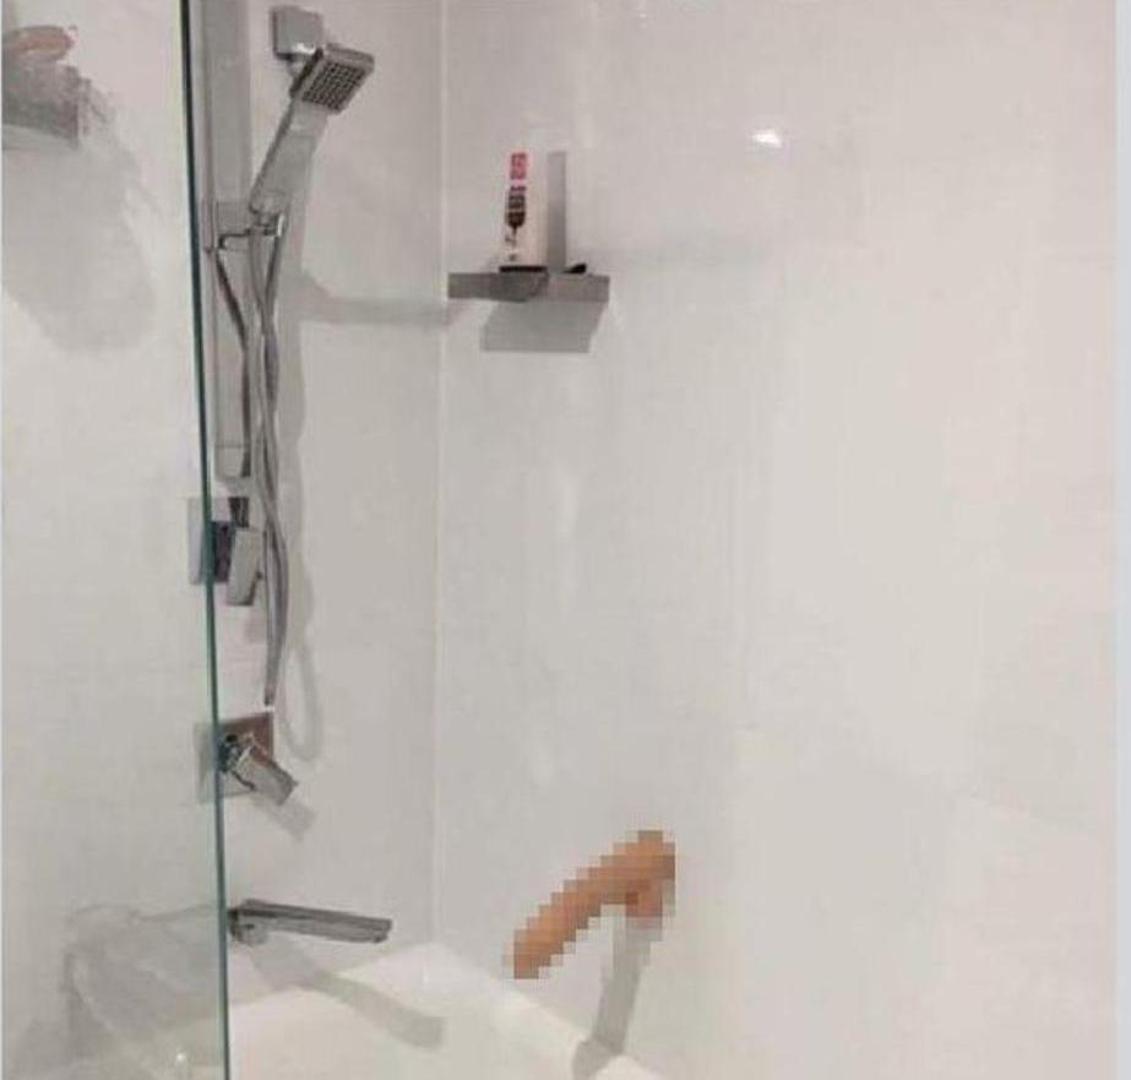 Vodoinstalater je objavio fotografiju seksi igračke iz kupaonice svoje klijentice pa je dobio otkaz. Naime, muškarac je fotografiju objavio u zatvorenoj Facebook grupi za muškarce, no ona je ipak došla do vlasnice kupaonice.